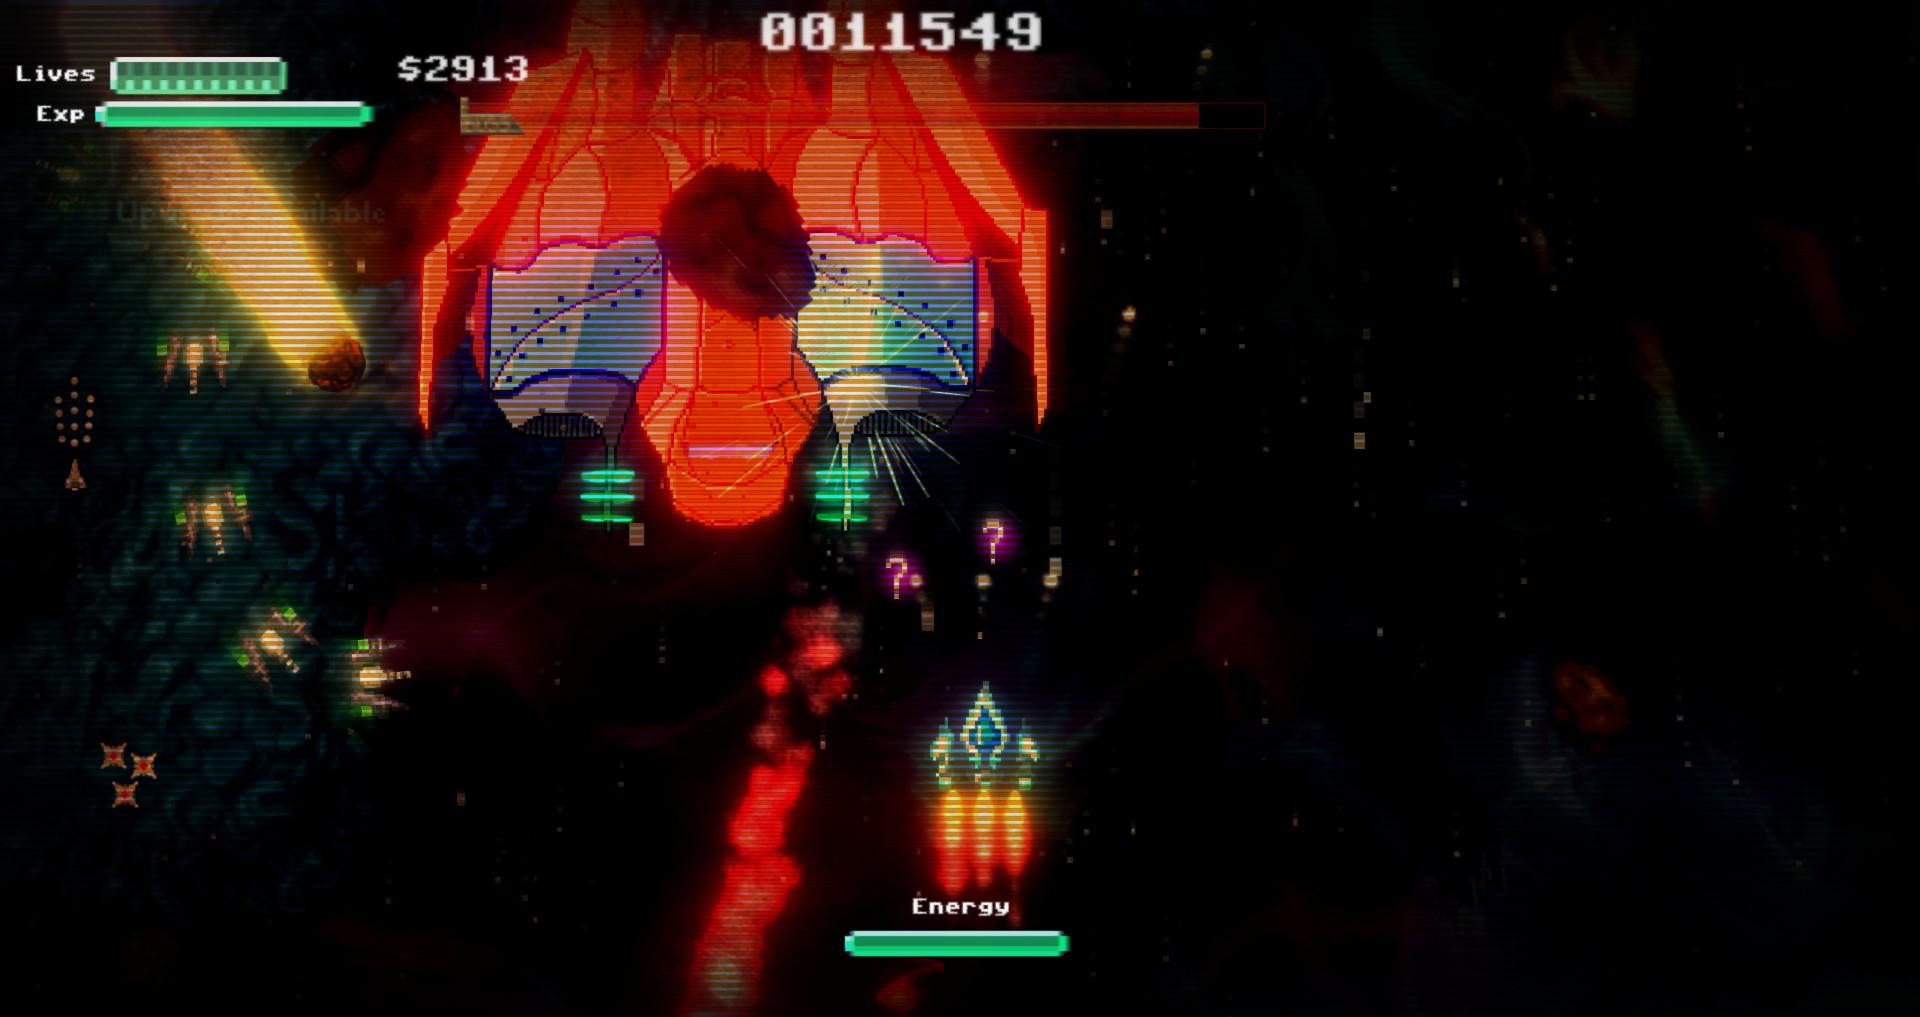 Screenshot №5 from game Star Drifter